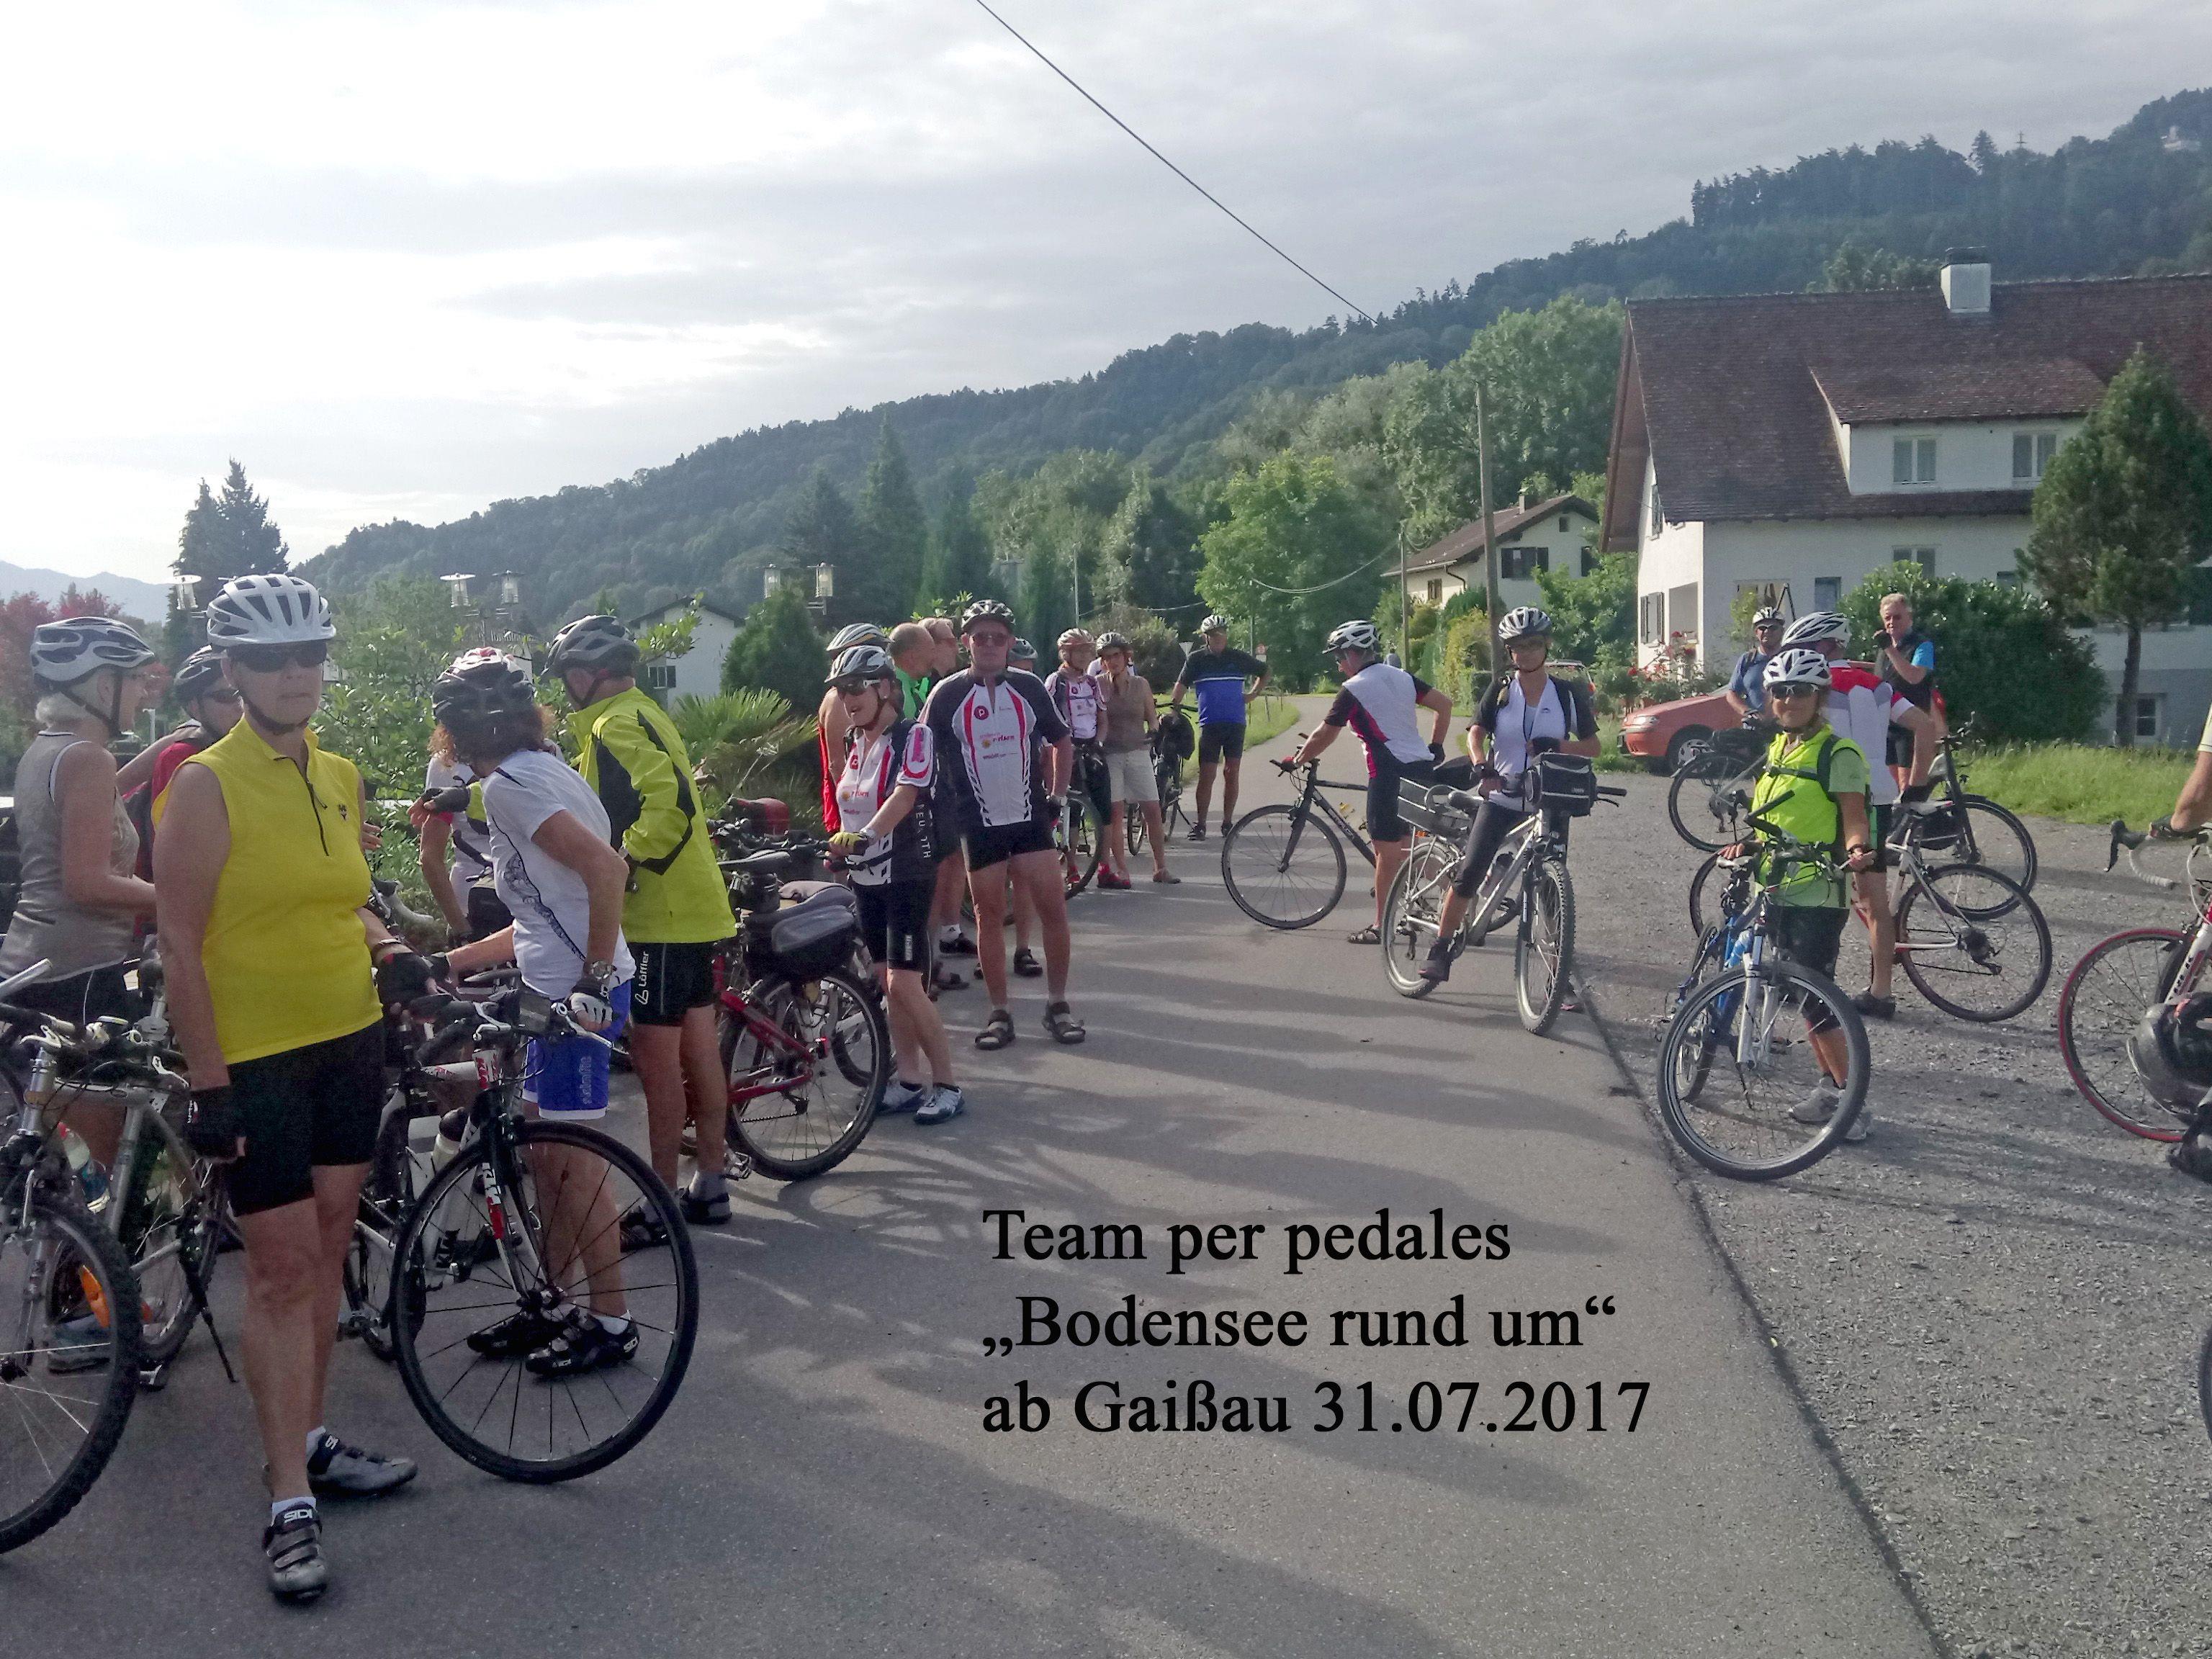 Radteam per pedales macht sich auf die Tour rund um den Bodensee